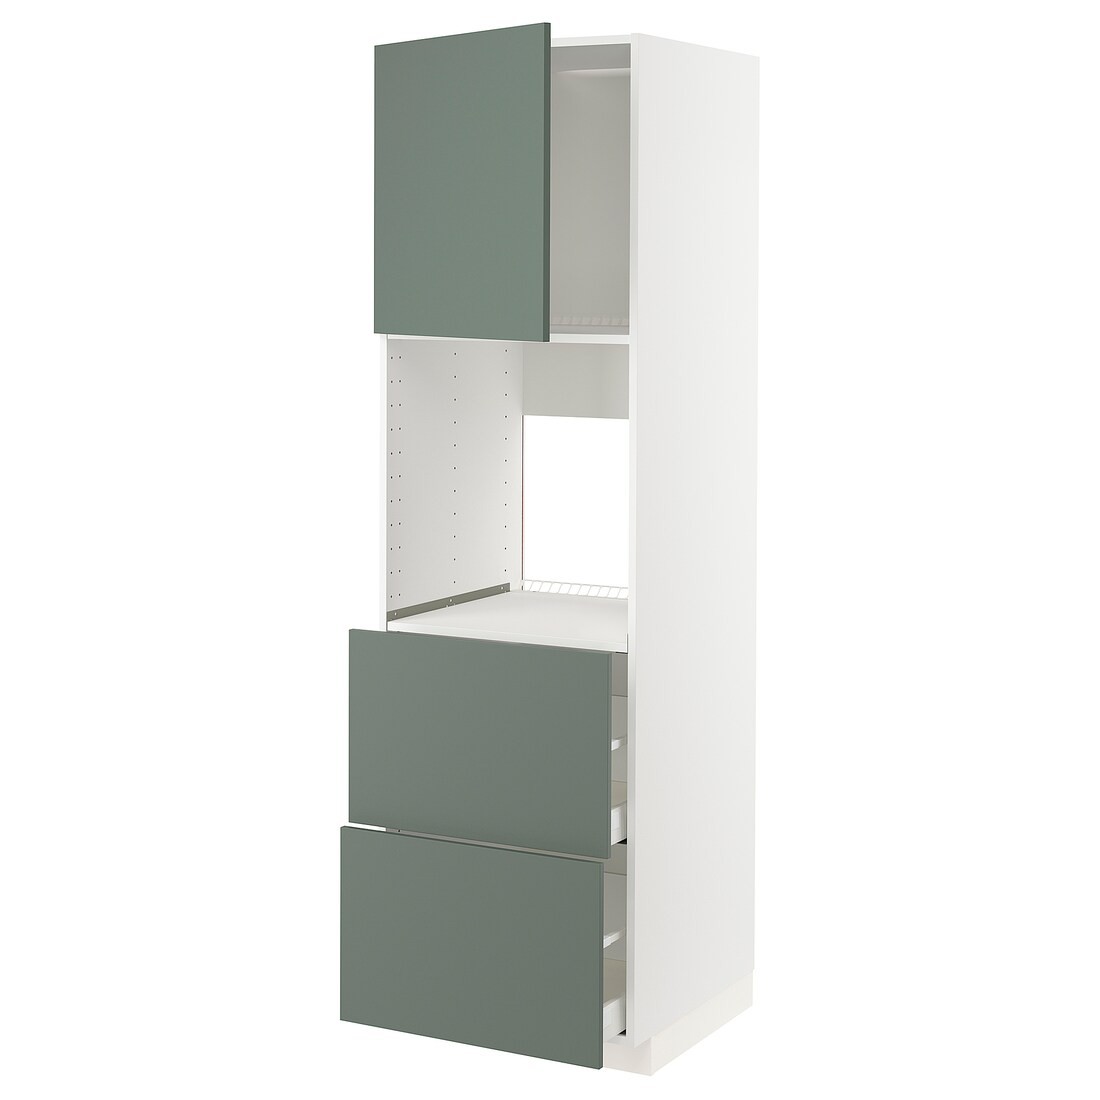 METOD МЕТОД / MAXIMERA МАКСИМЕРА Высокий шкаф для духовки с дверцей / ящиками, белый / Bodarp серо-зеленый, 60x60x200 см